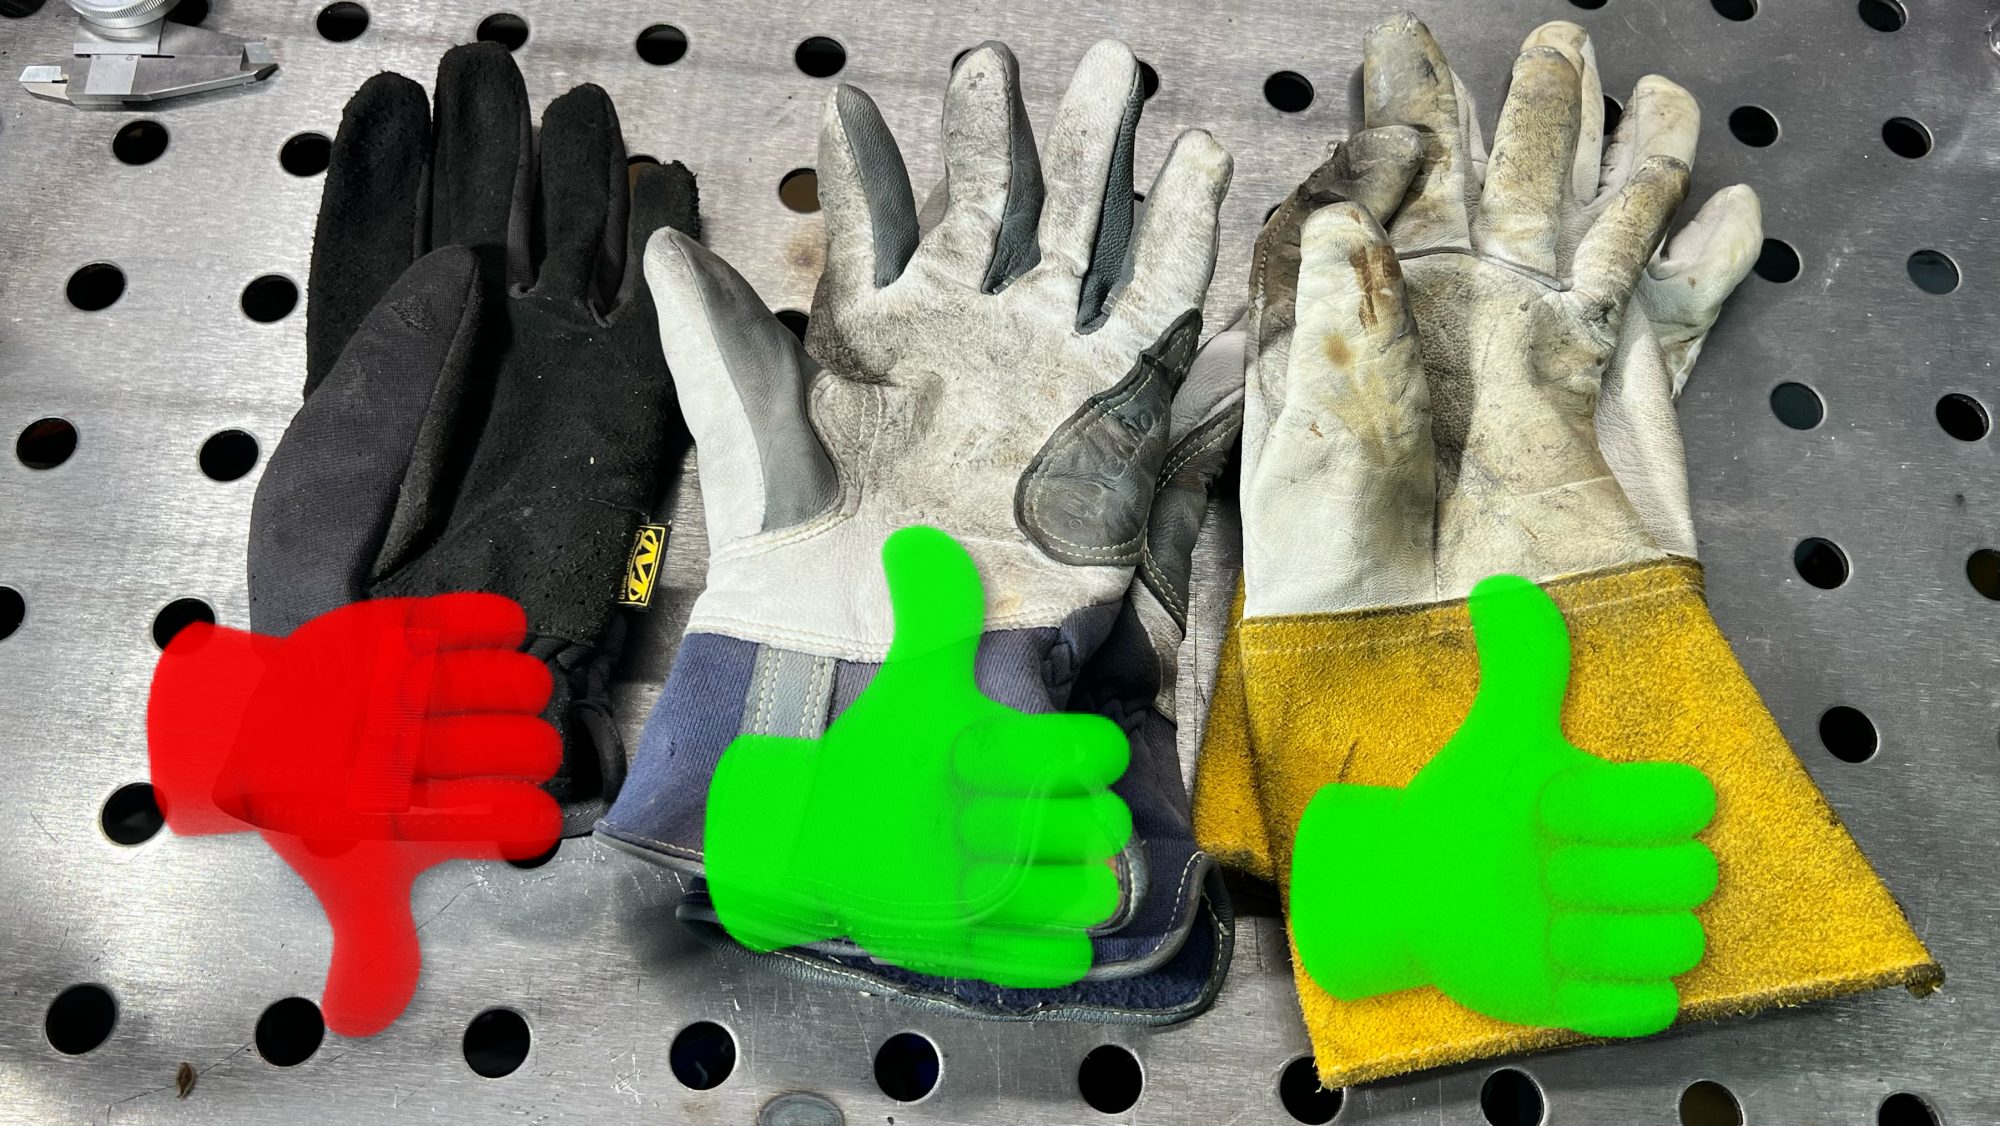 welding gloves